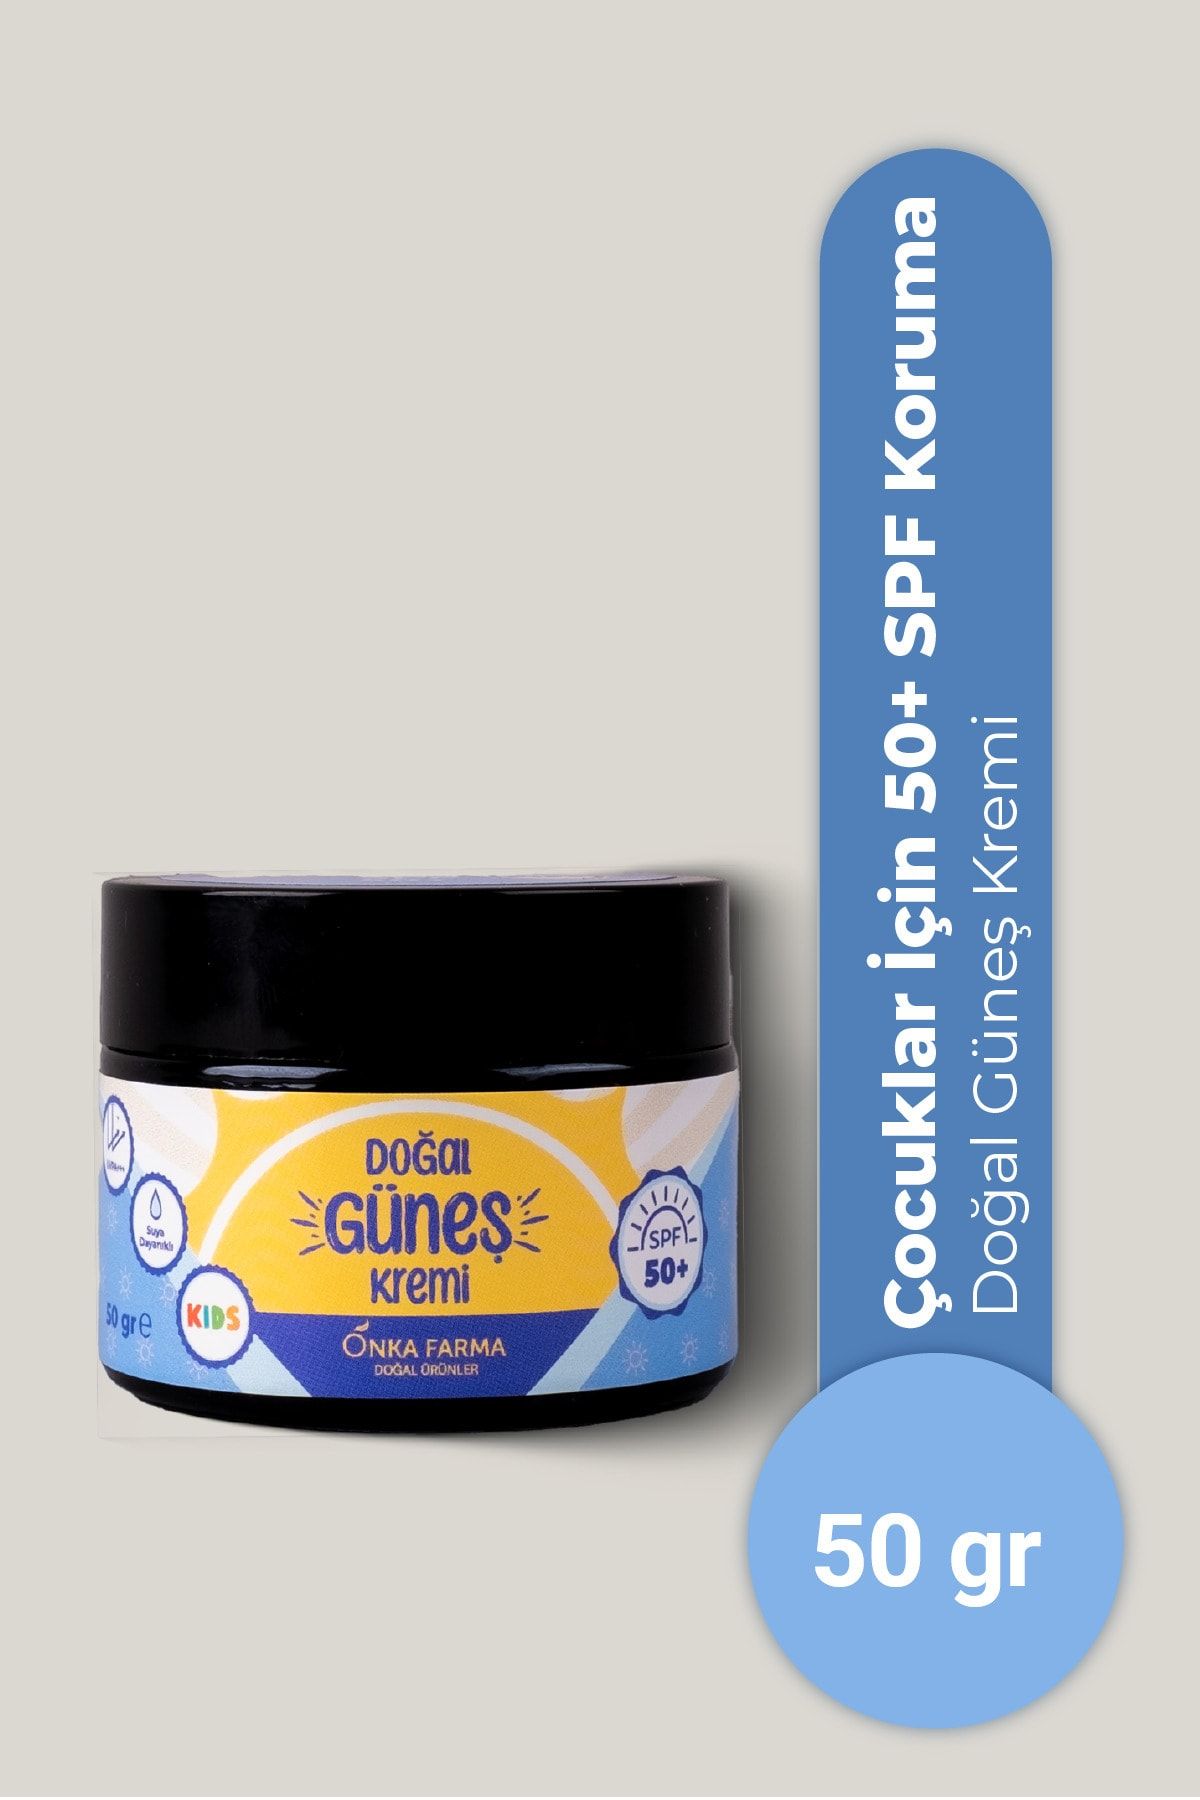 OnkaFarma Onka Farma Doğal Çocuk Güneş Kremi 50+ SPF Faktör - 2 Yaş Üzeri Kullanım - Dermotolojik Testli